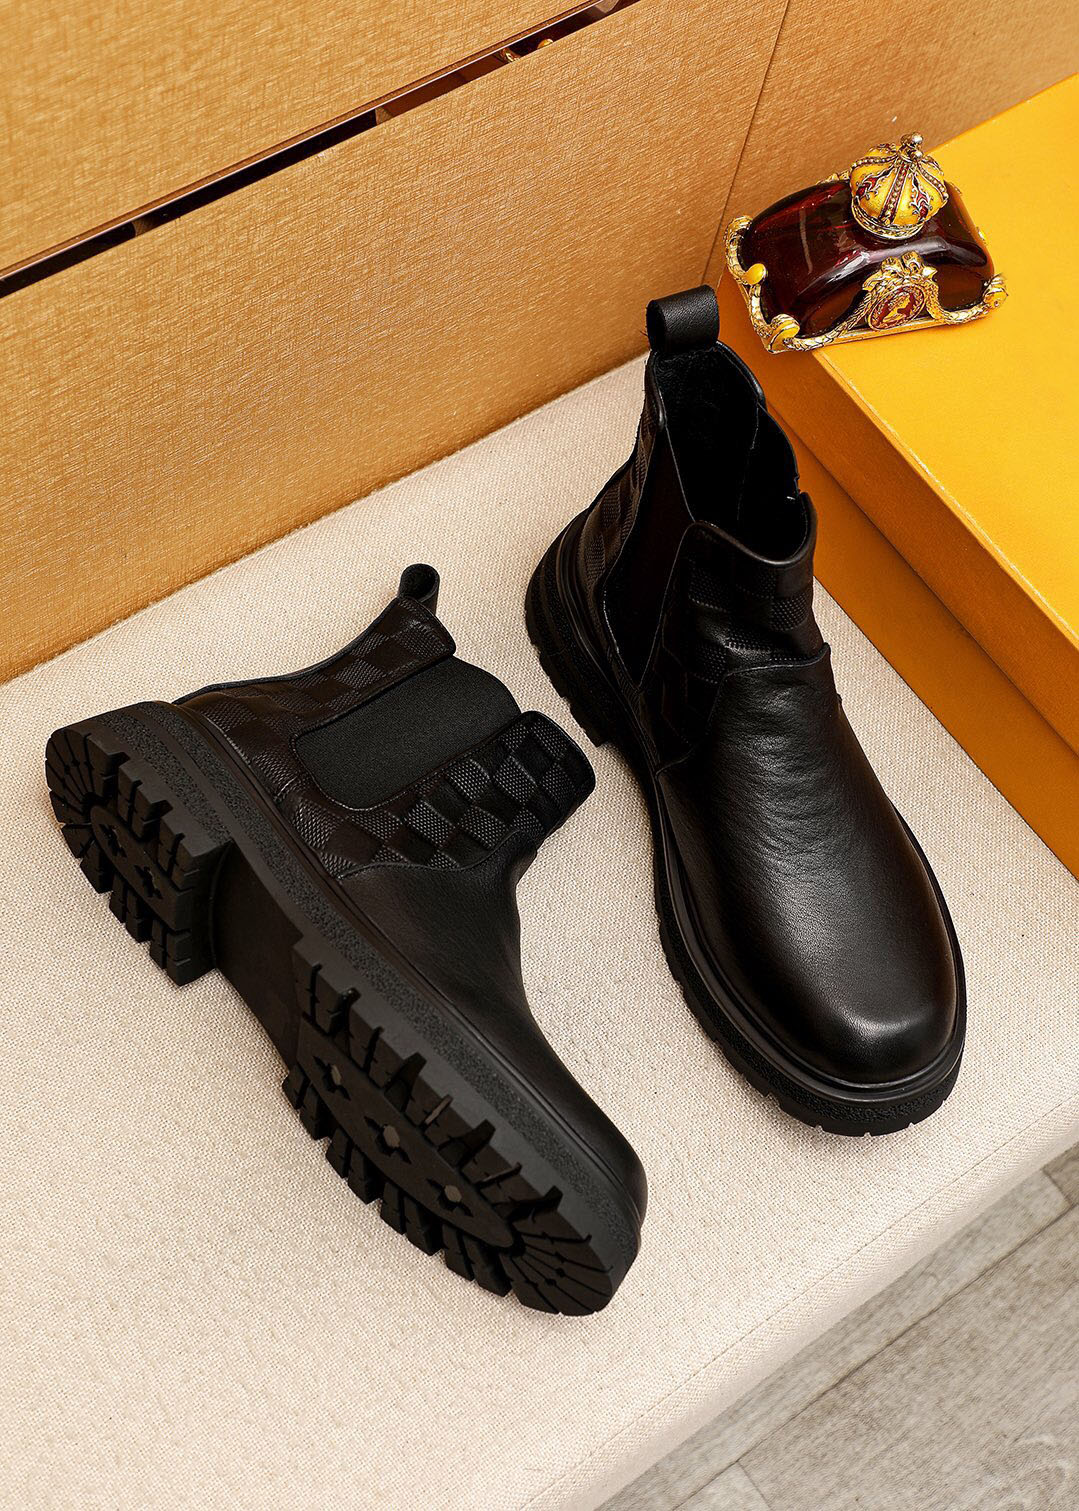 Botas de tornozelo dos homens designer de alta qualidade botas de couro genuíno da motocicleta marca masculina clássico inverno outono casual sapatos de negócios tamanho 38-45